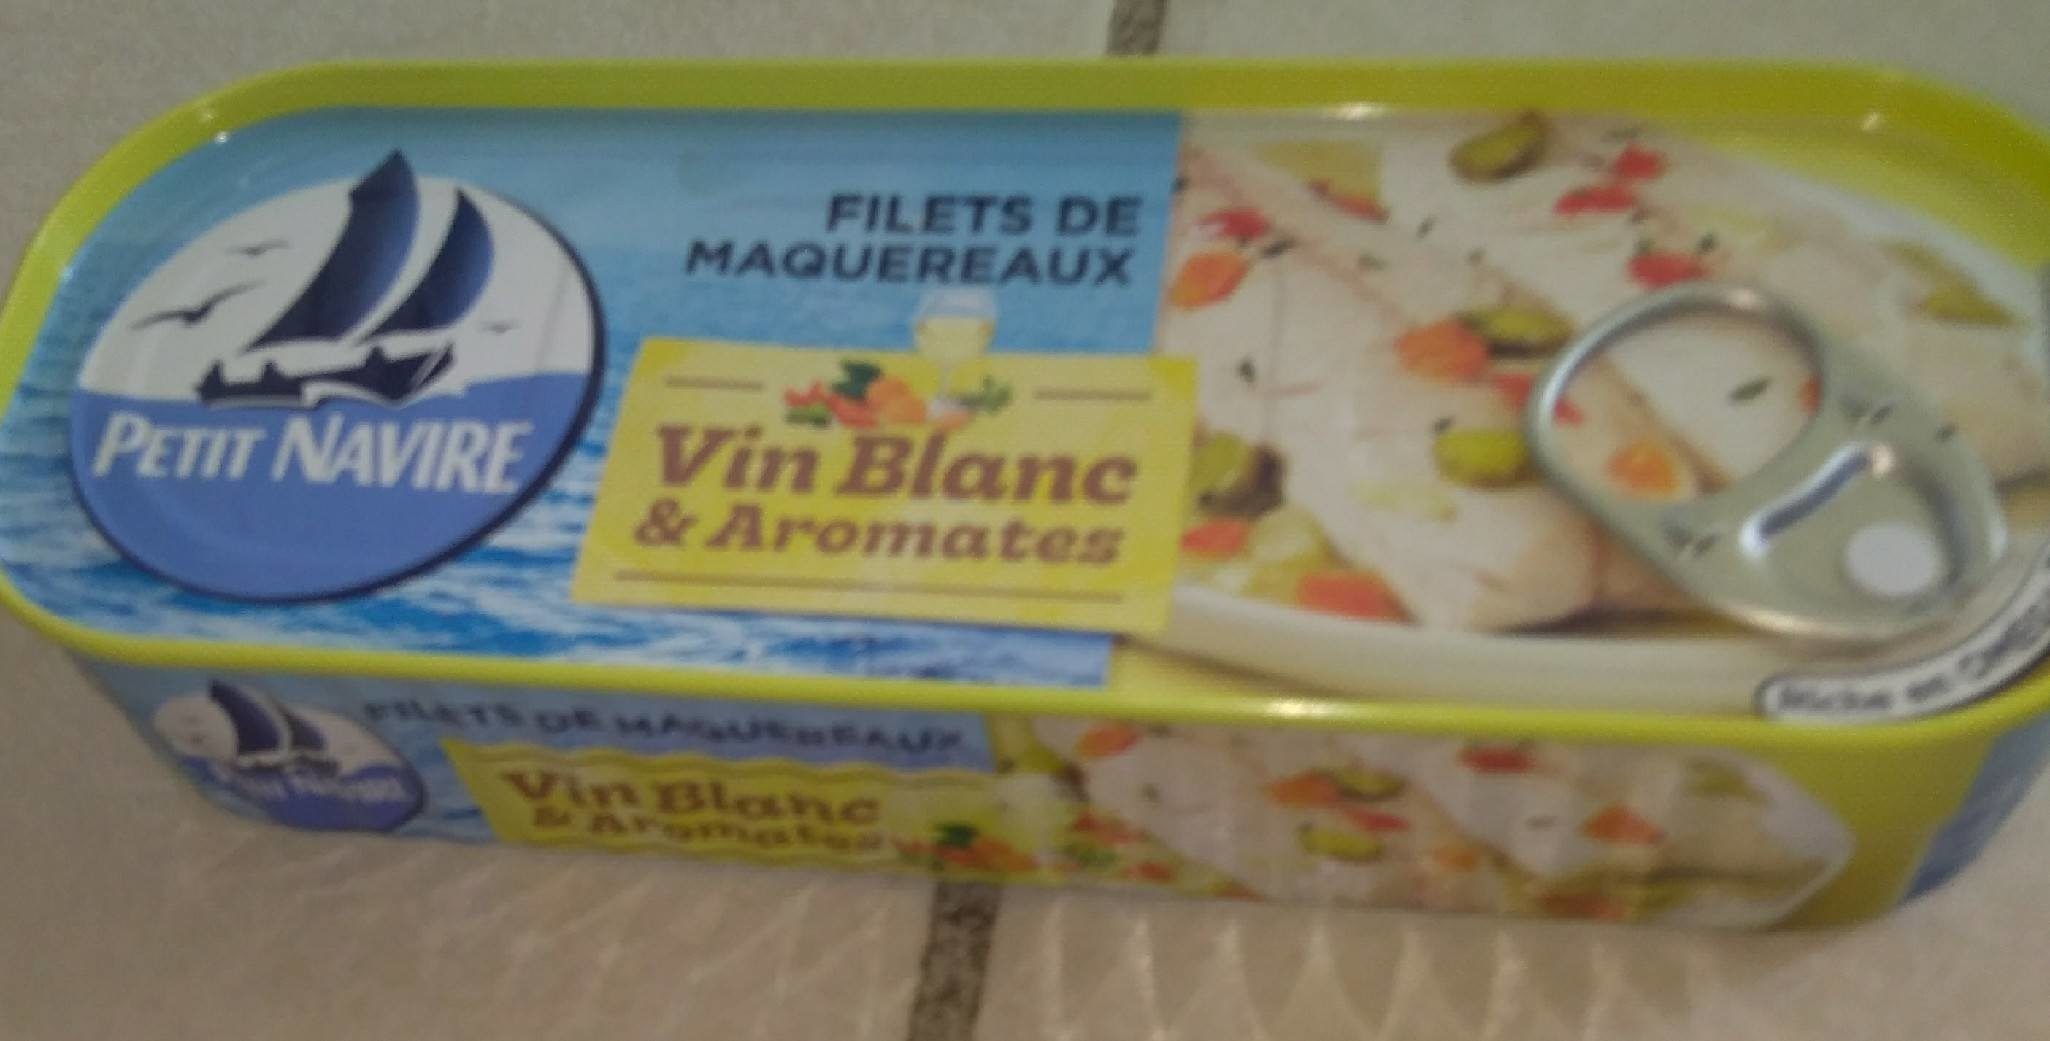 Filets de Maquereaux Vin Blanc & Aromates - Product - fr